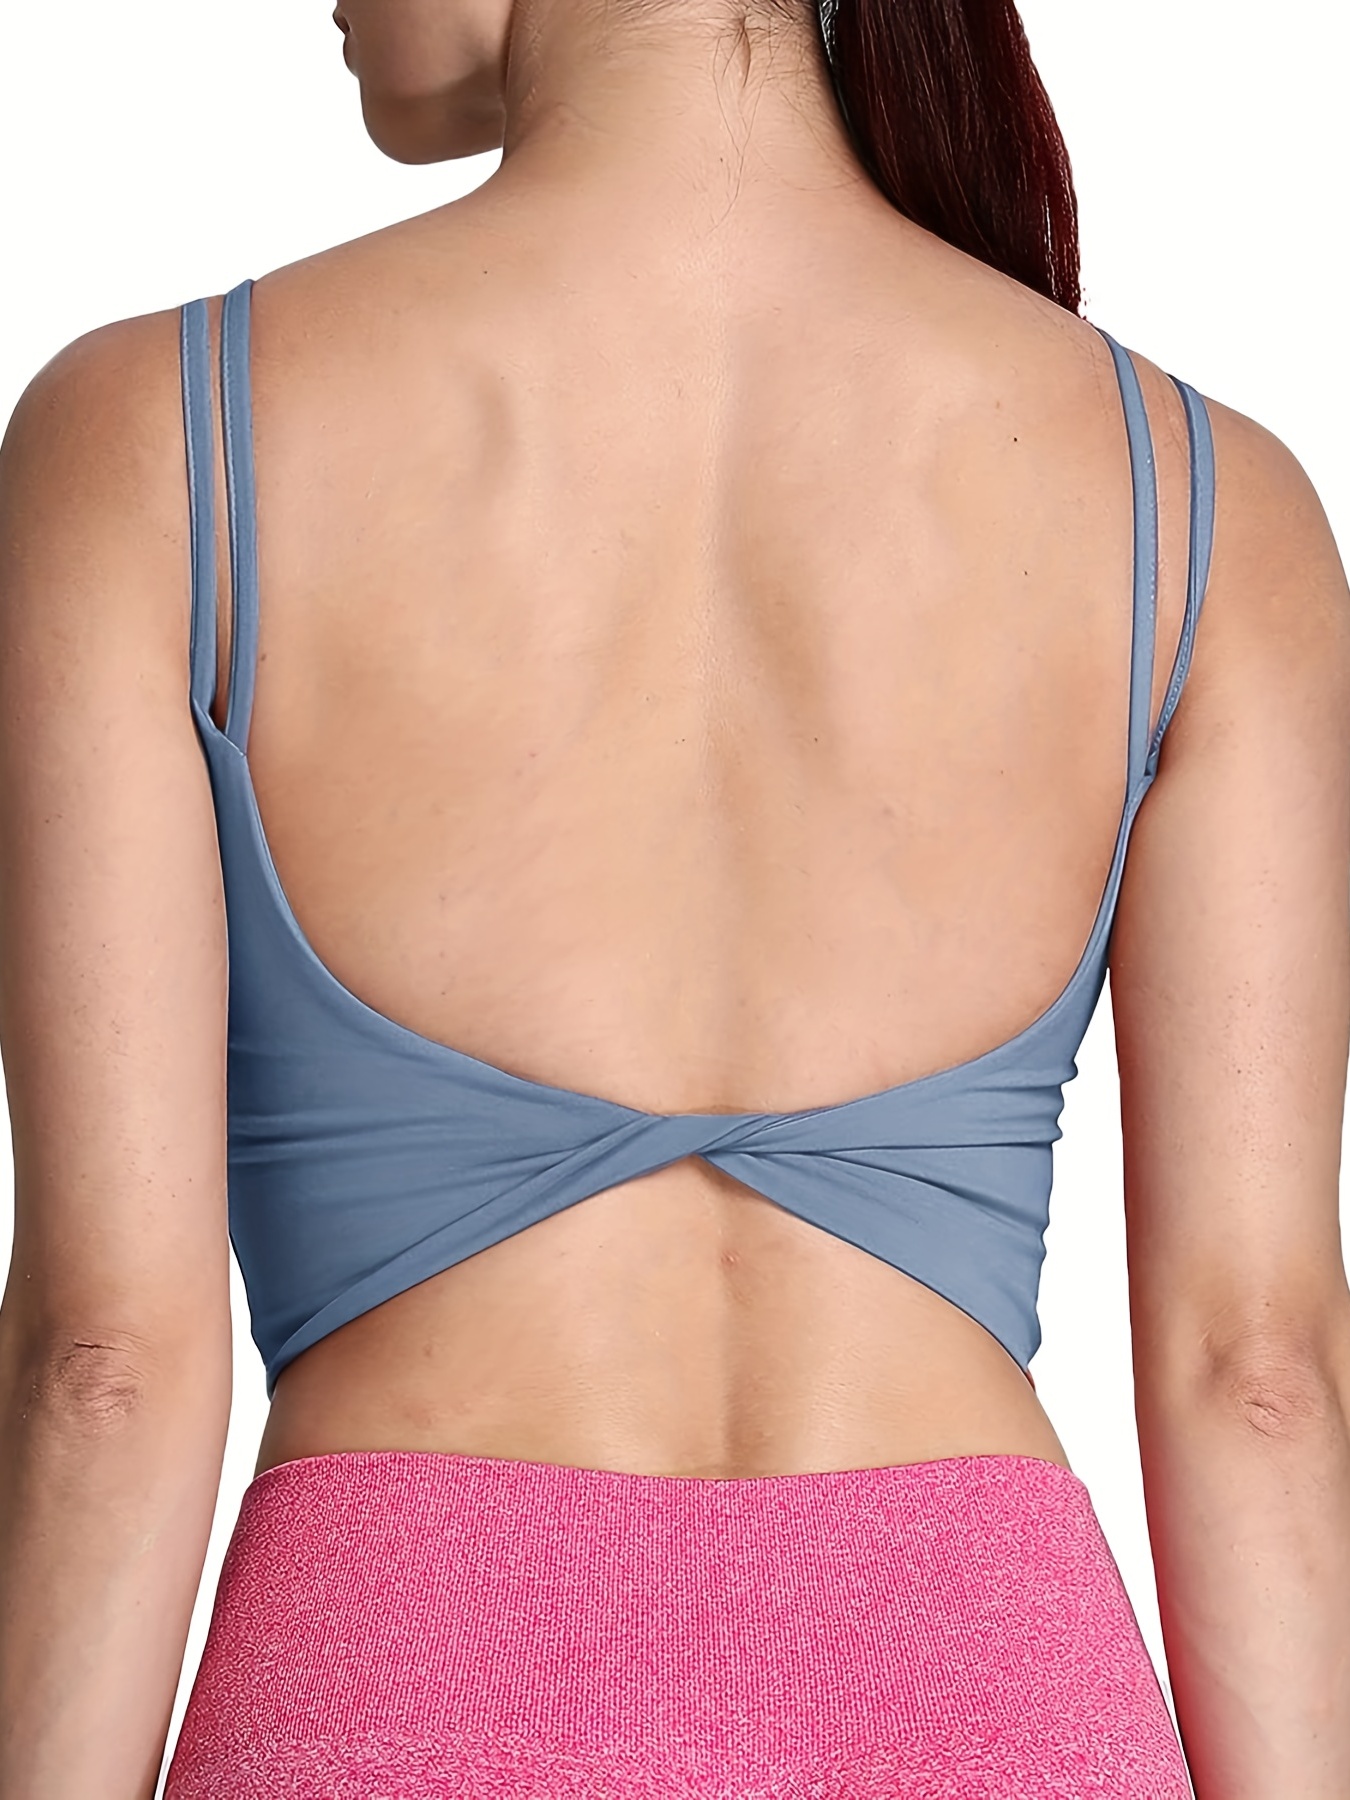 Turn a basic sports bra into a backless sports bra #DIY #backless #spo